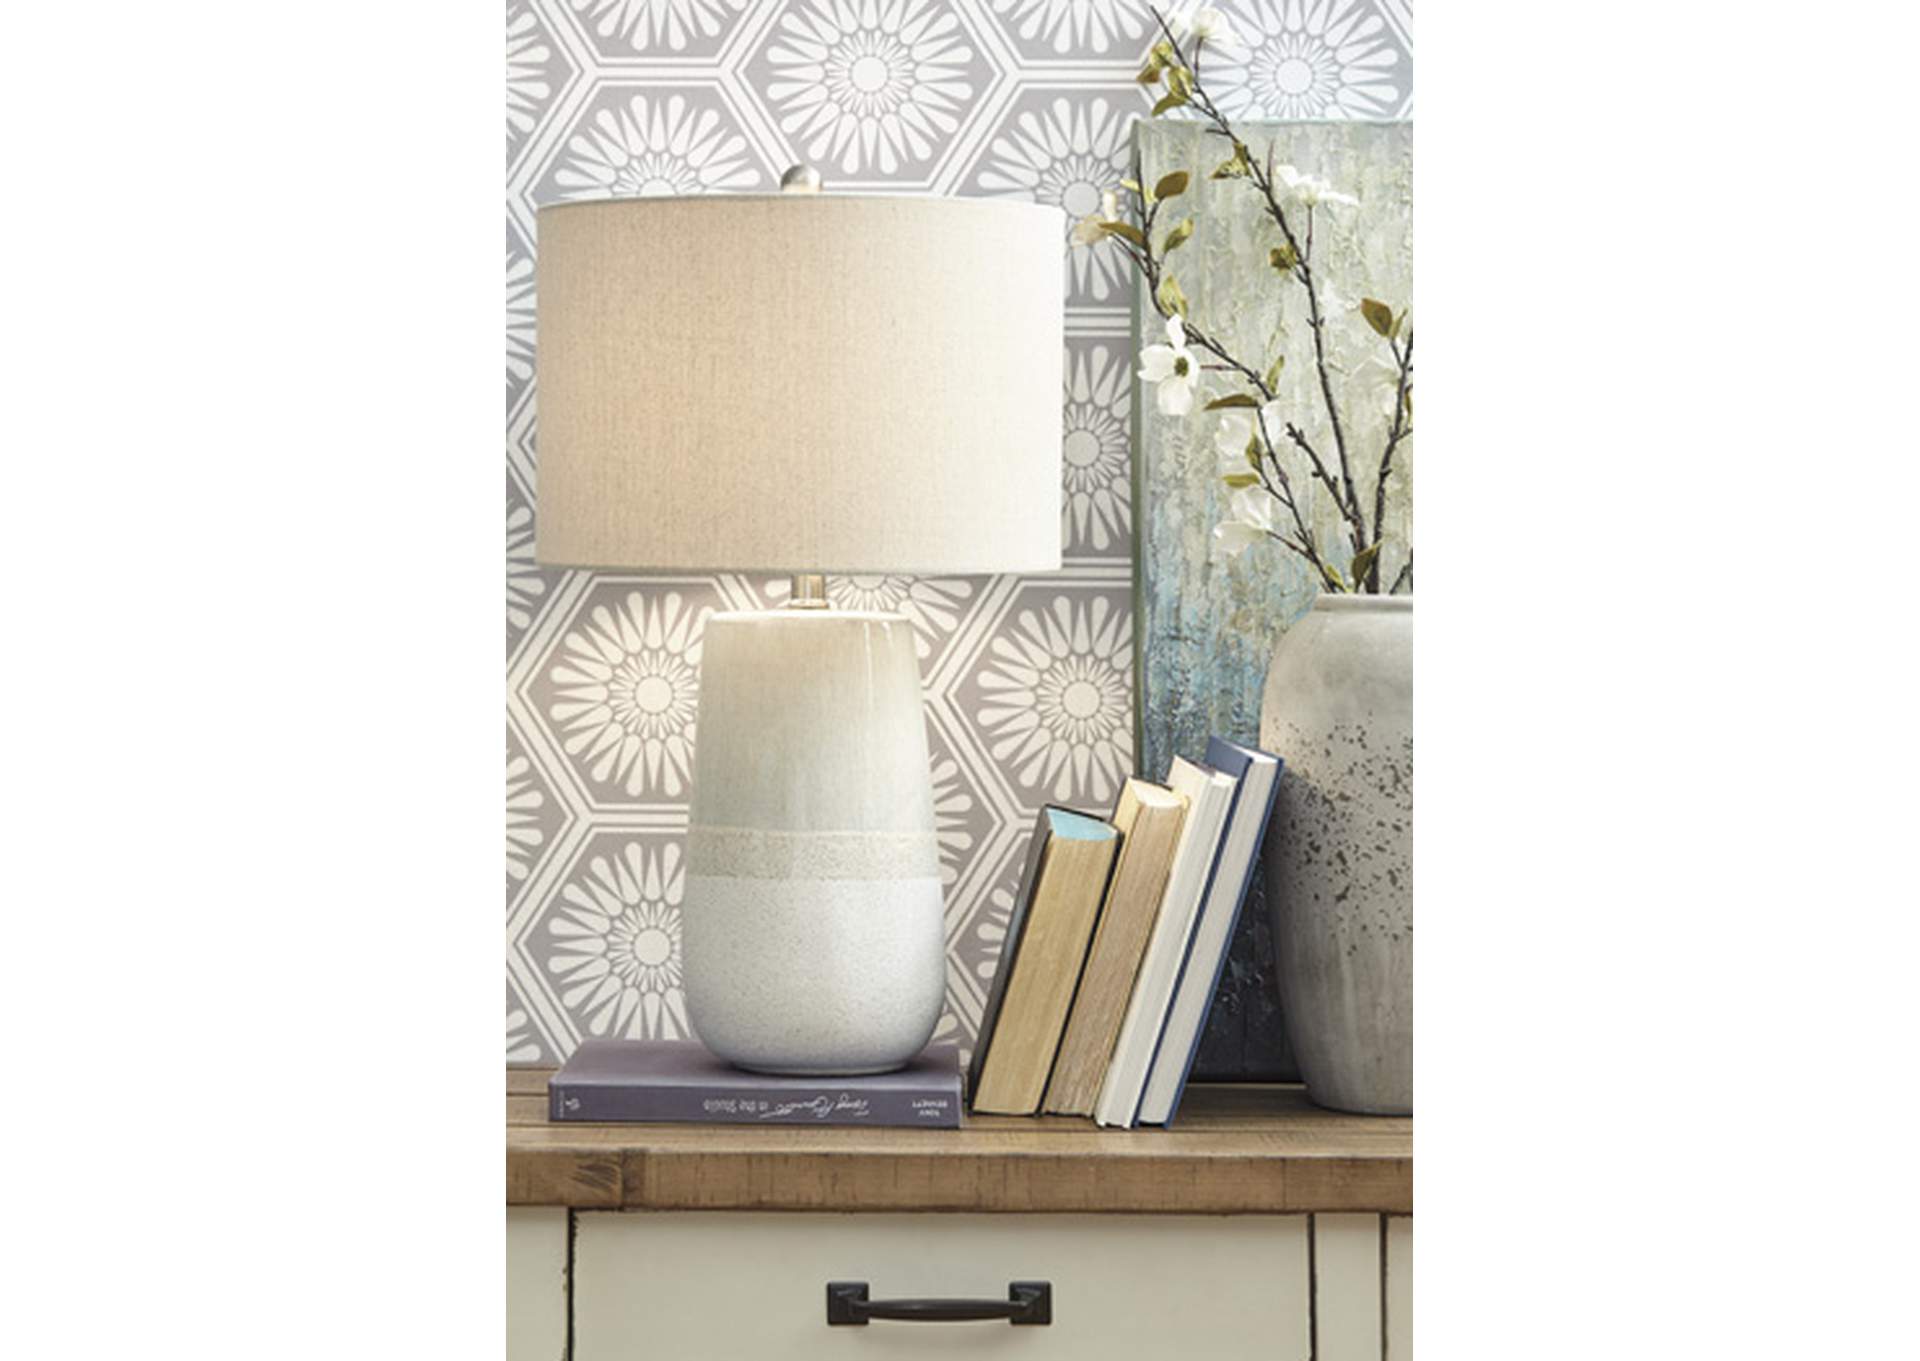 Shavon Beige/White Ceramic Table Lamp